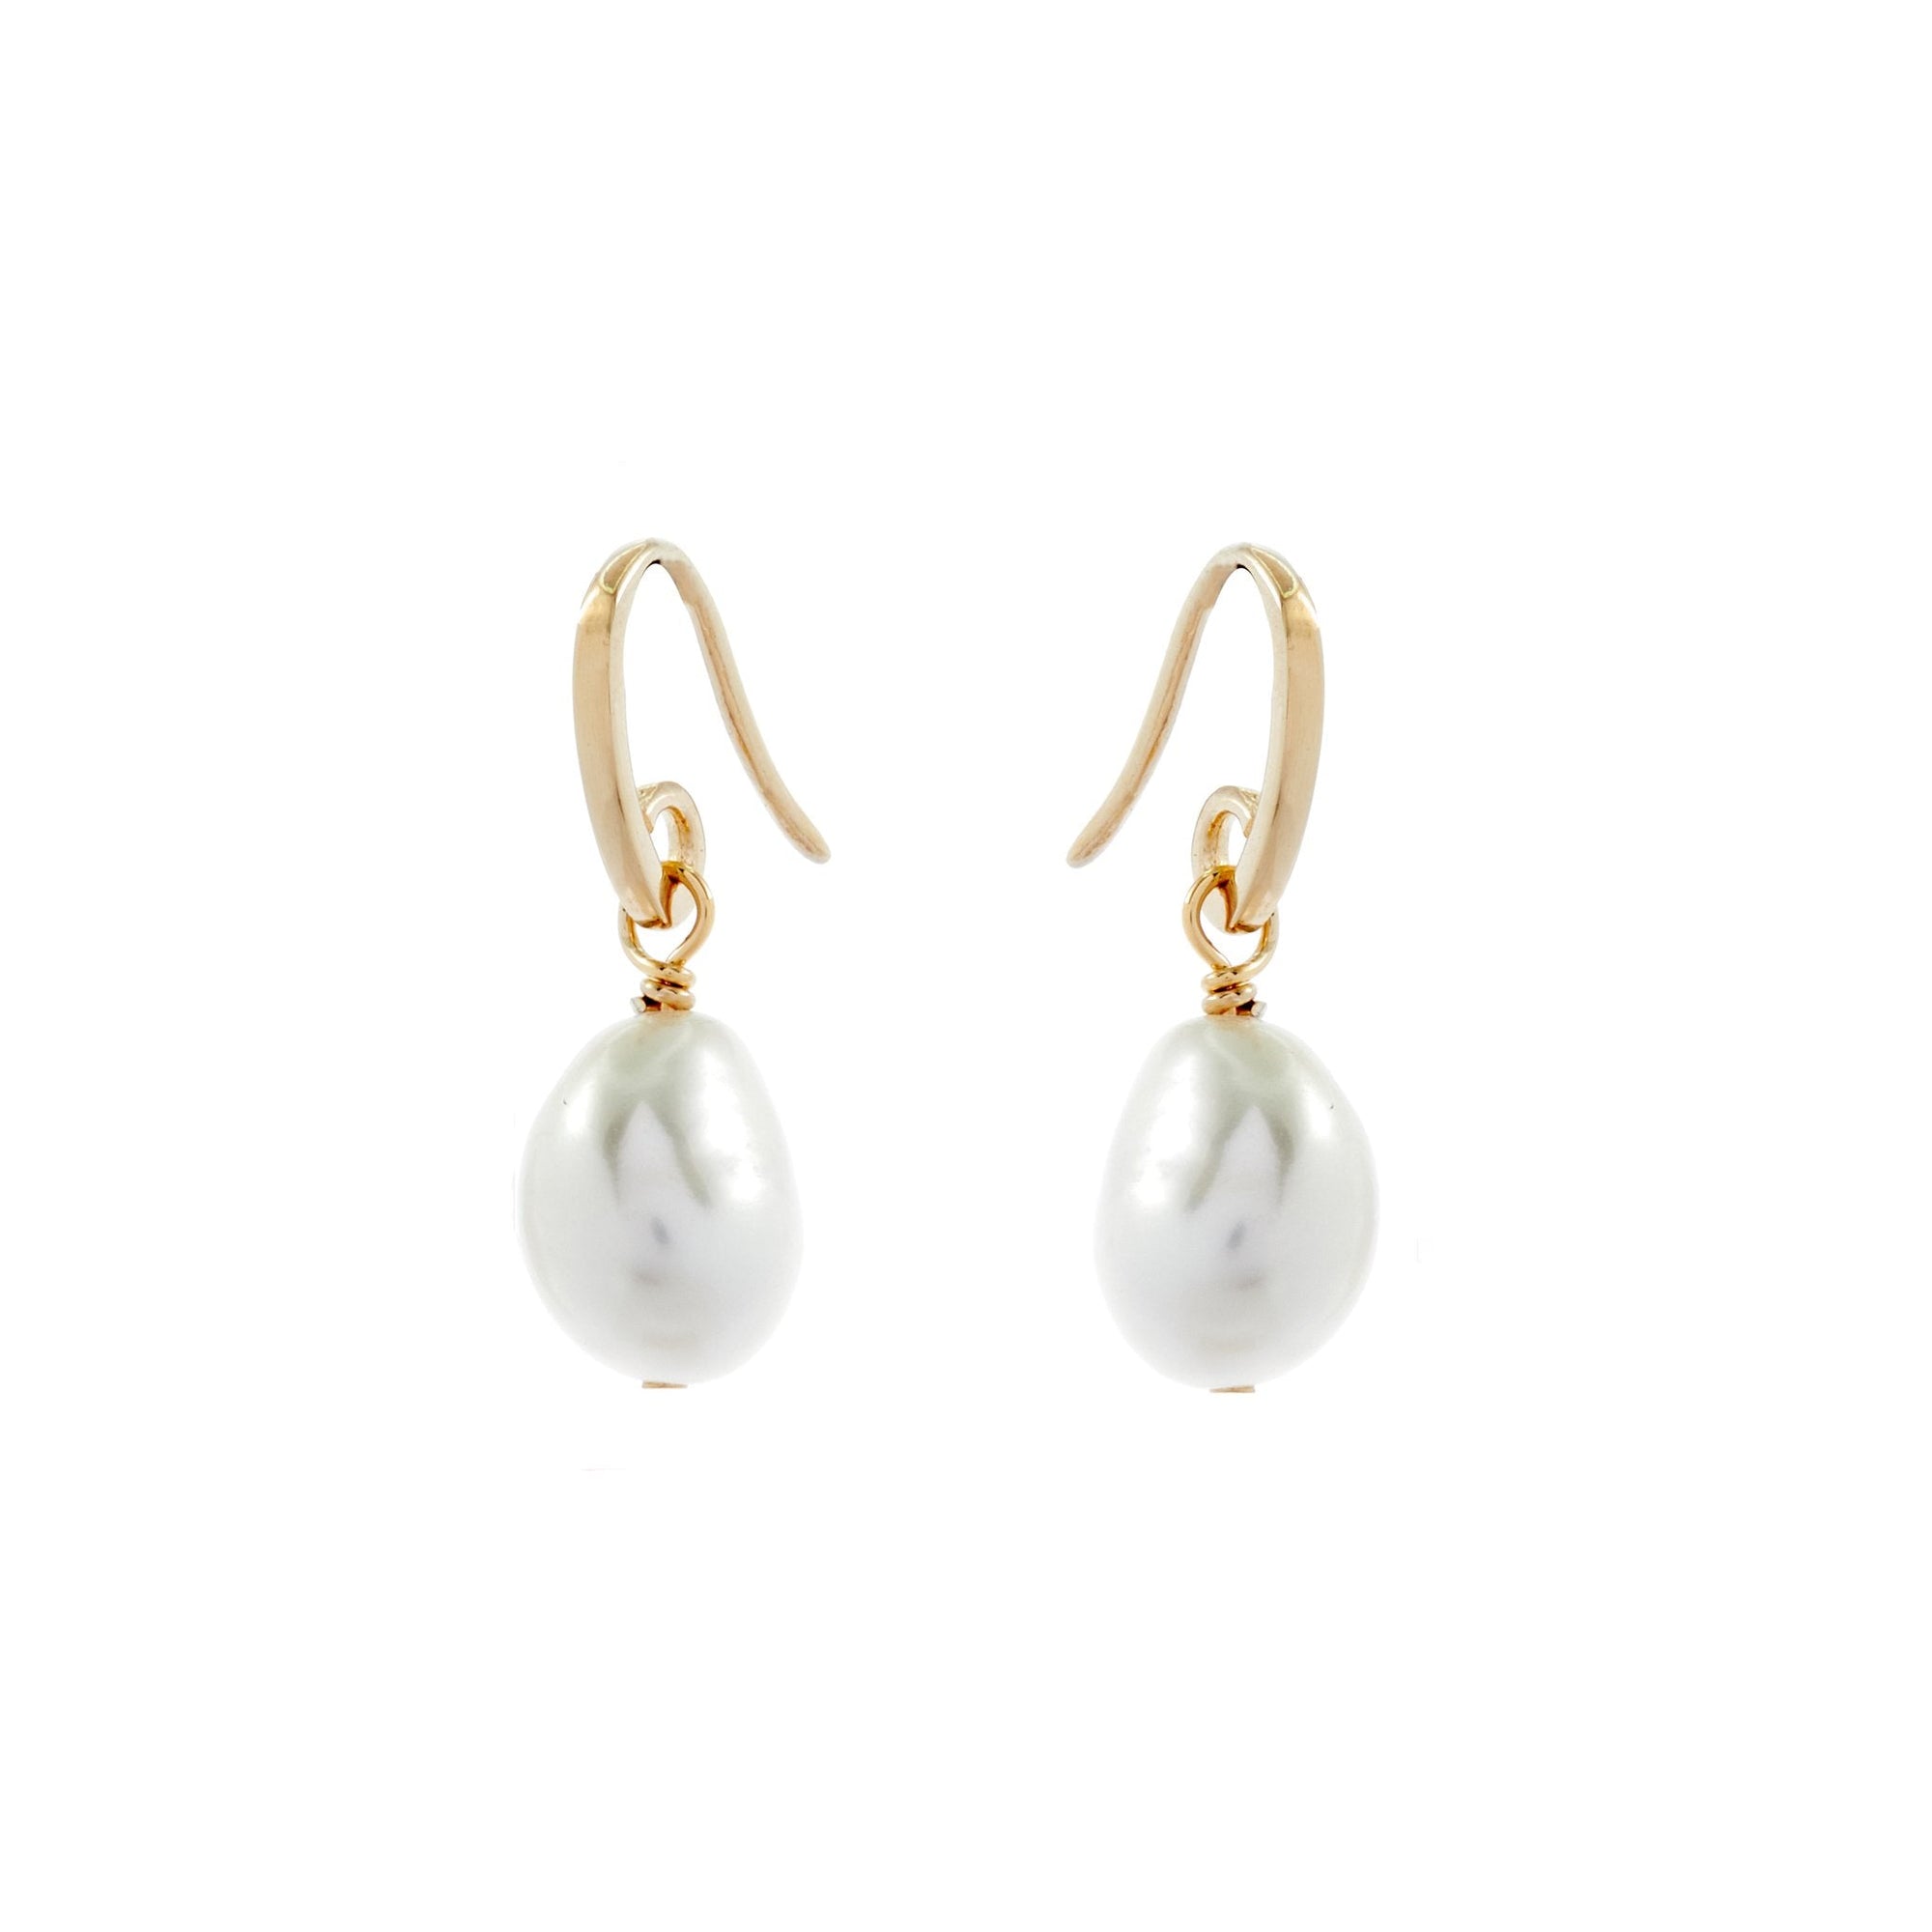 Duo Jewellery Earrings Duo paradise pearl earrings